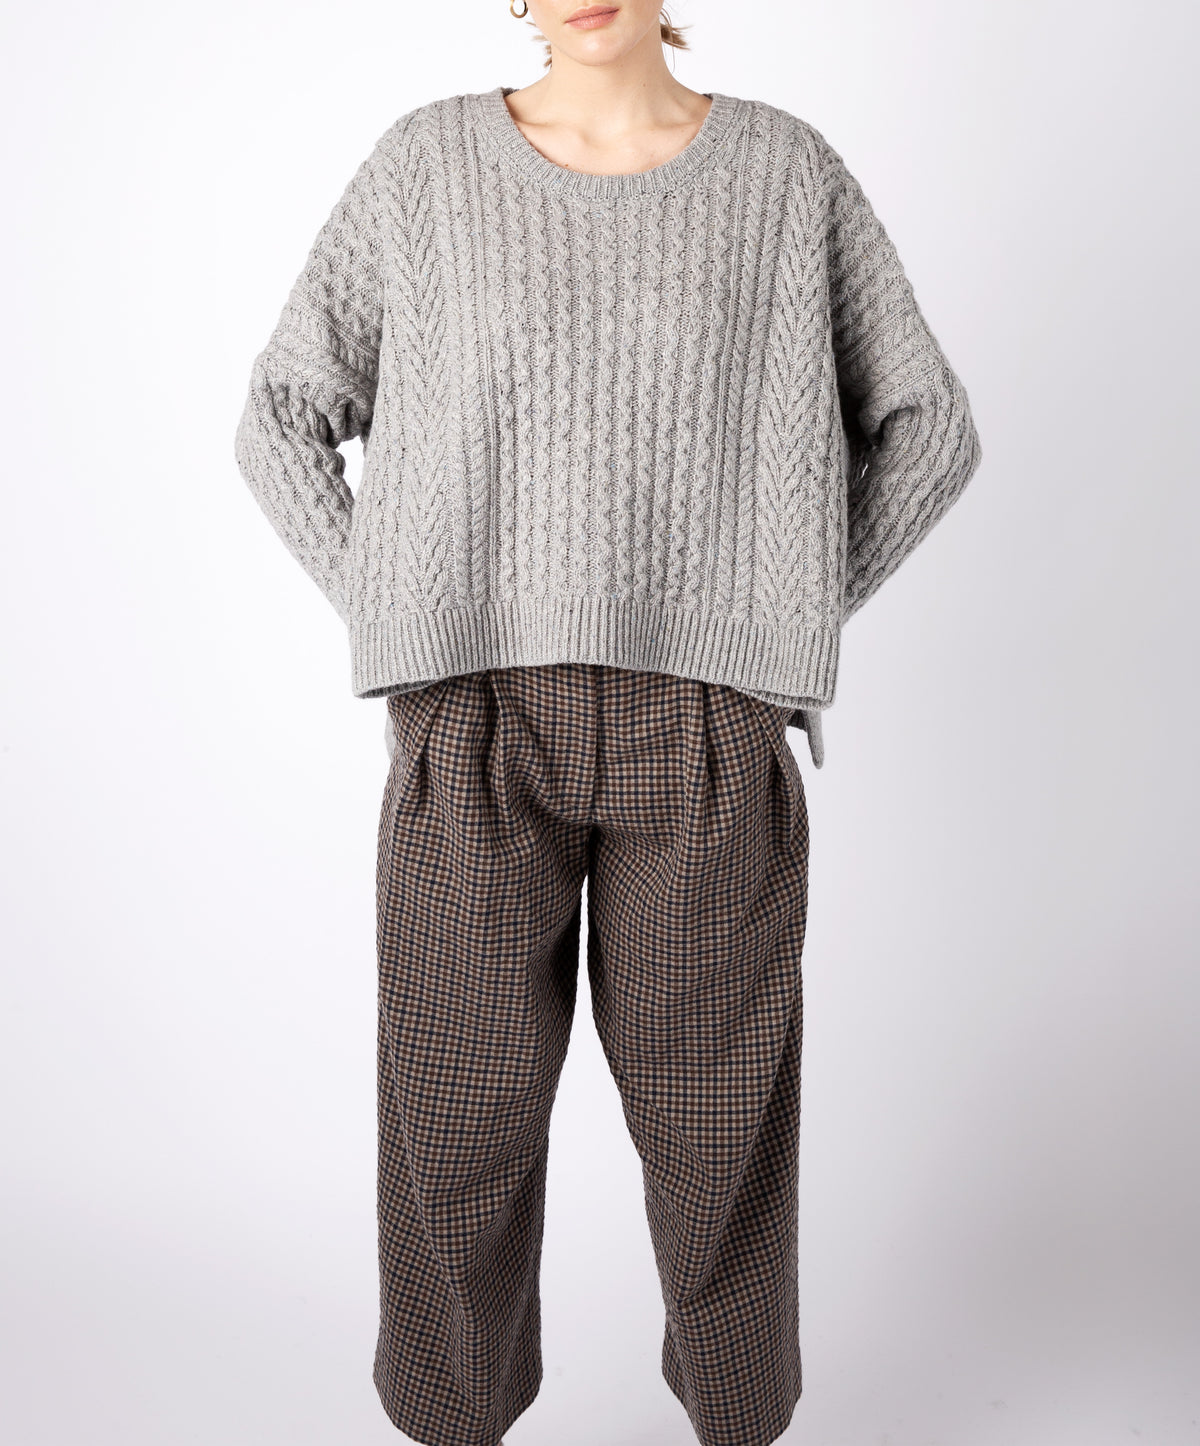 IrelandsEye Knitwear Women's Knitted 'Sorrell' Cropped Aran Sweater Pearl Grey